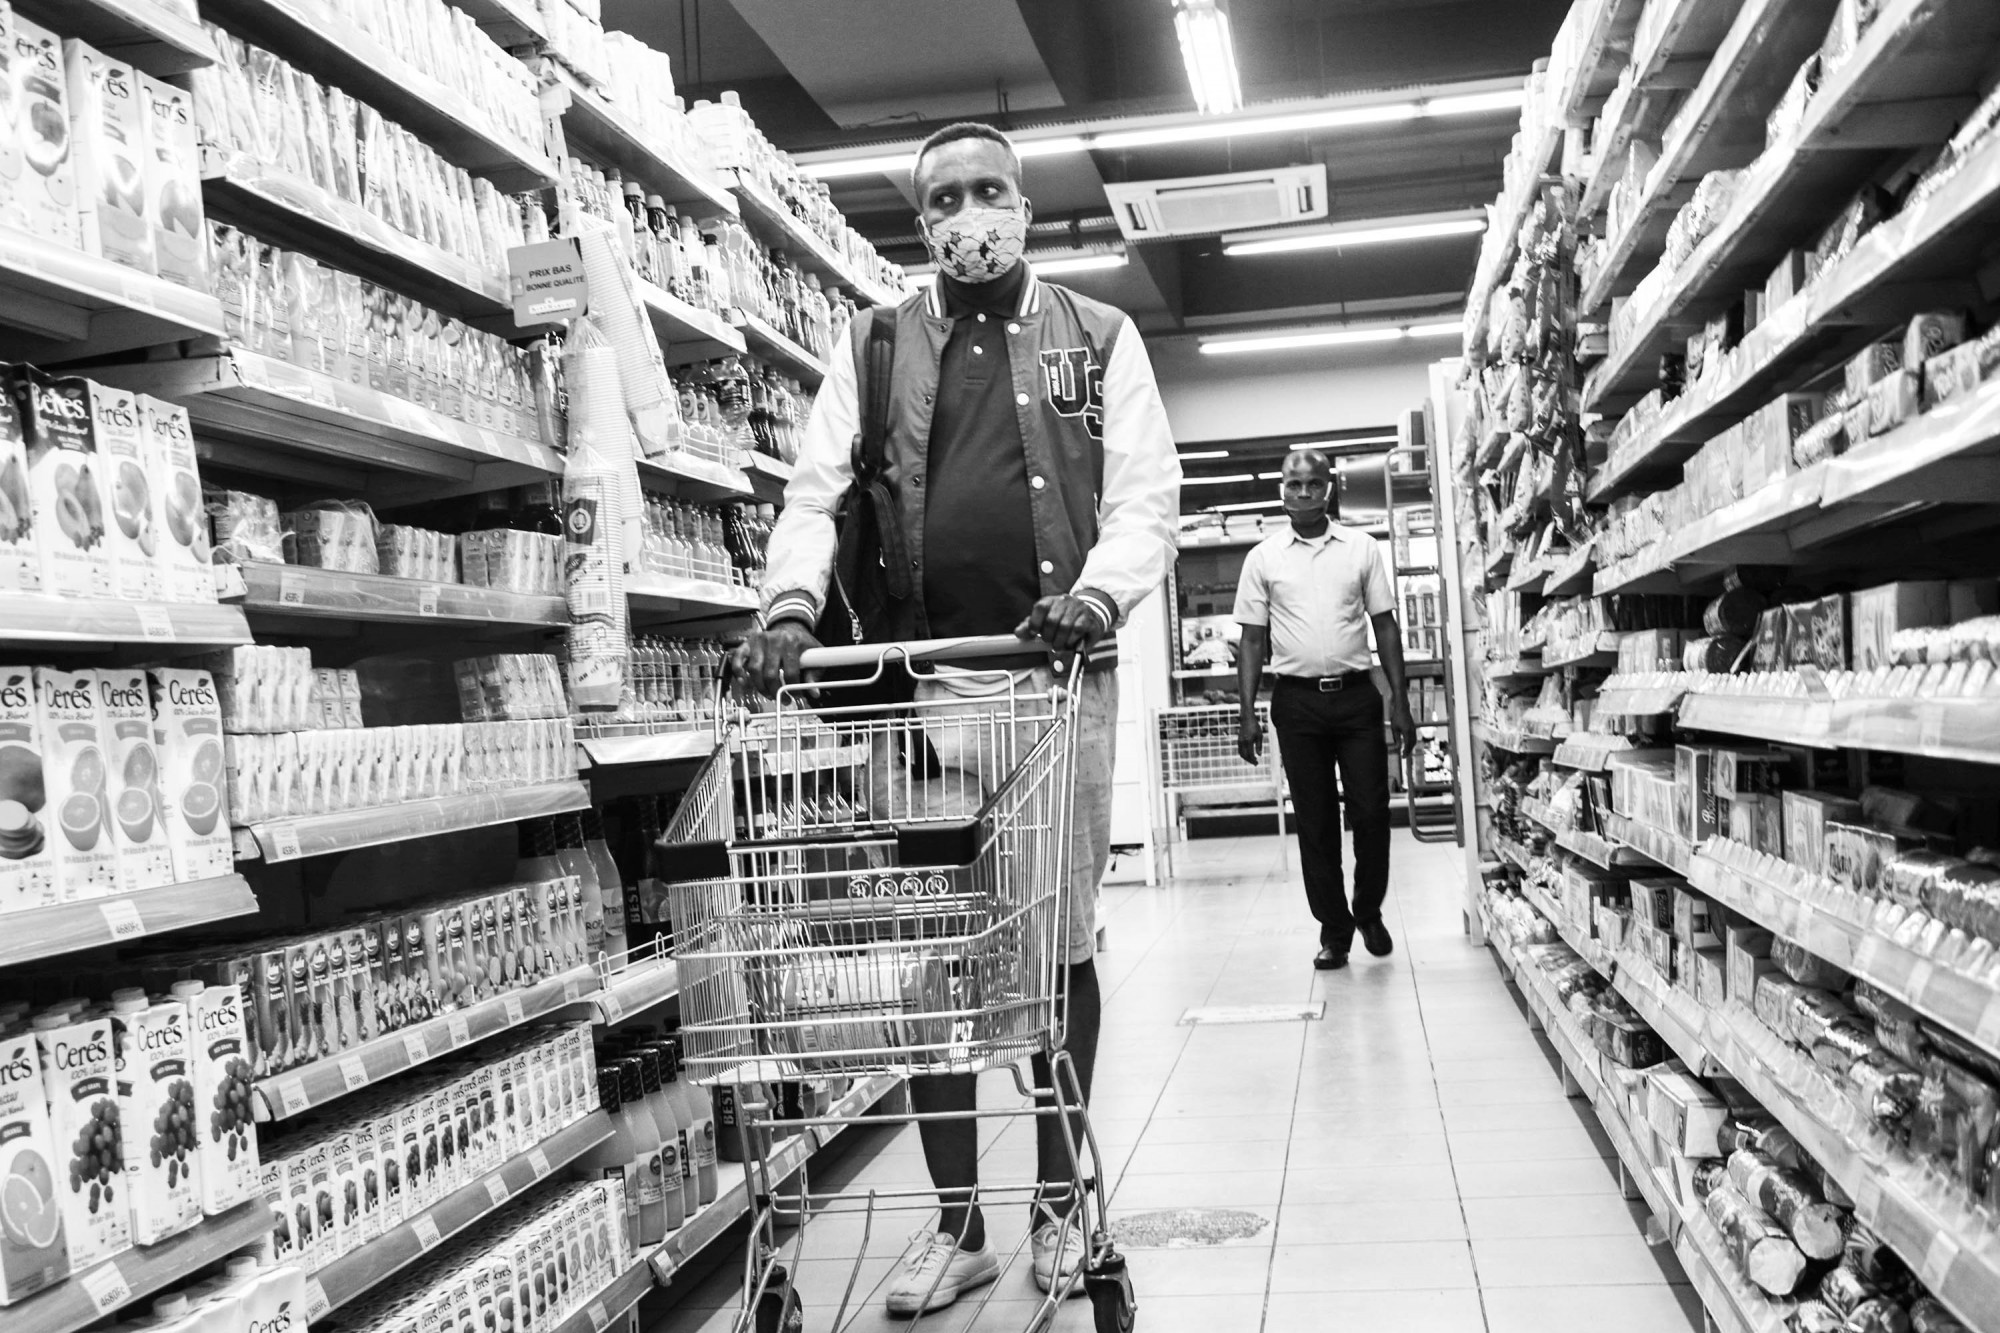 Les masques et la distanciation sociale sont obligatoires dans les principaux supermarchés. © Justin Makangara pour la Fondation Carmignac